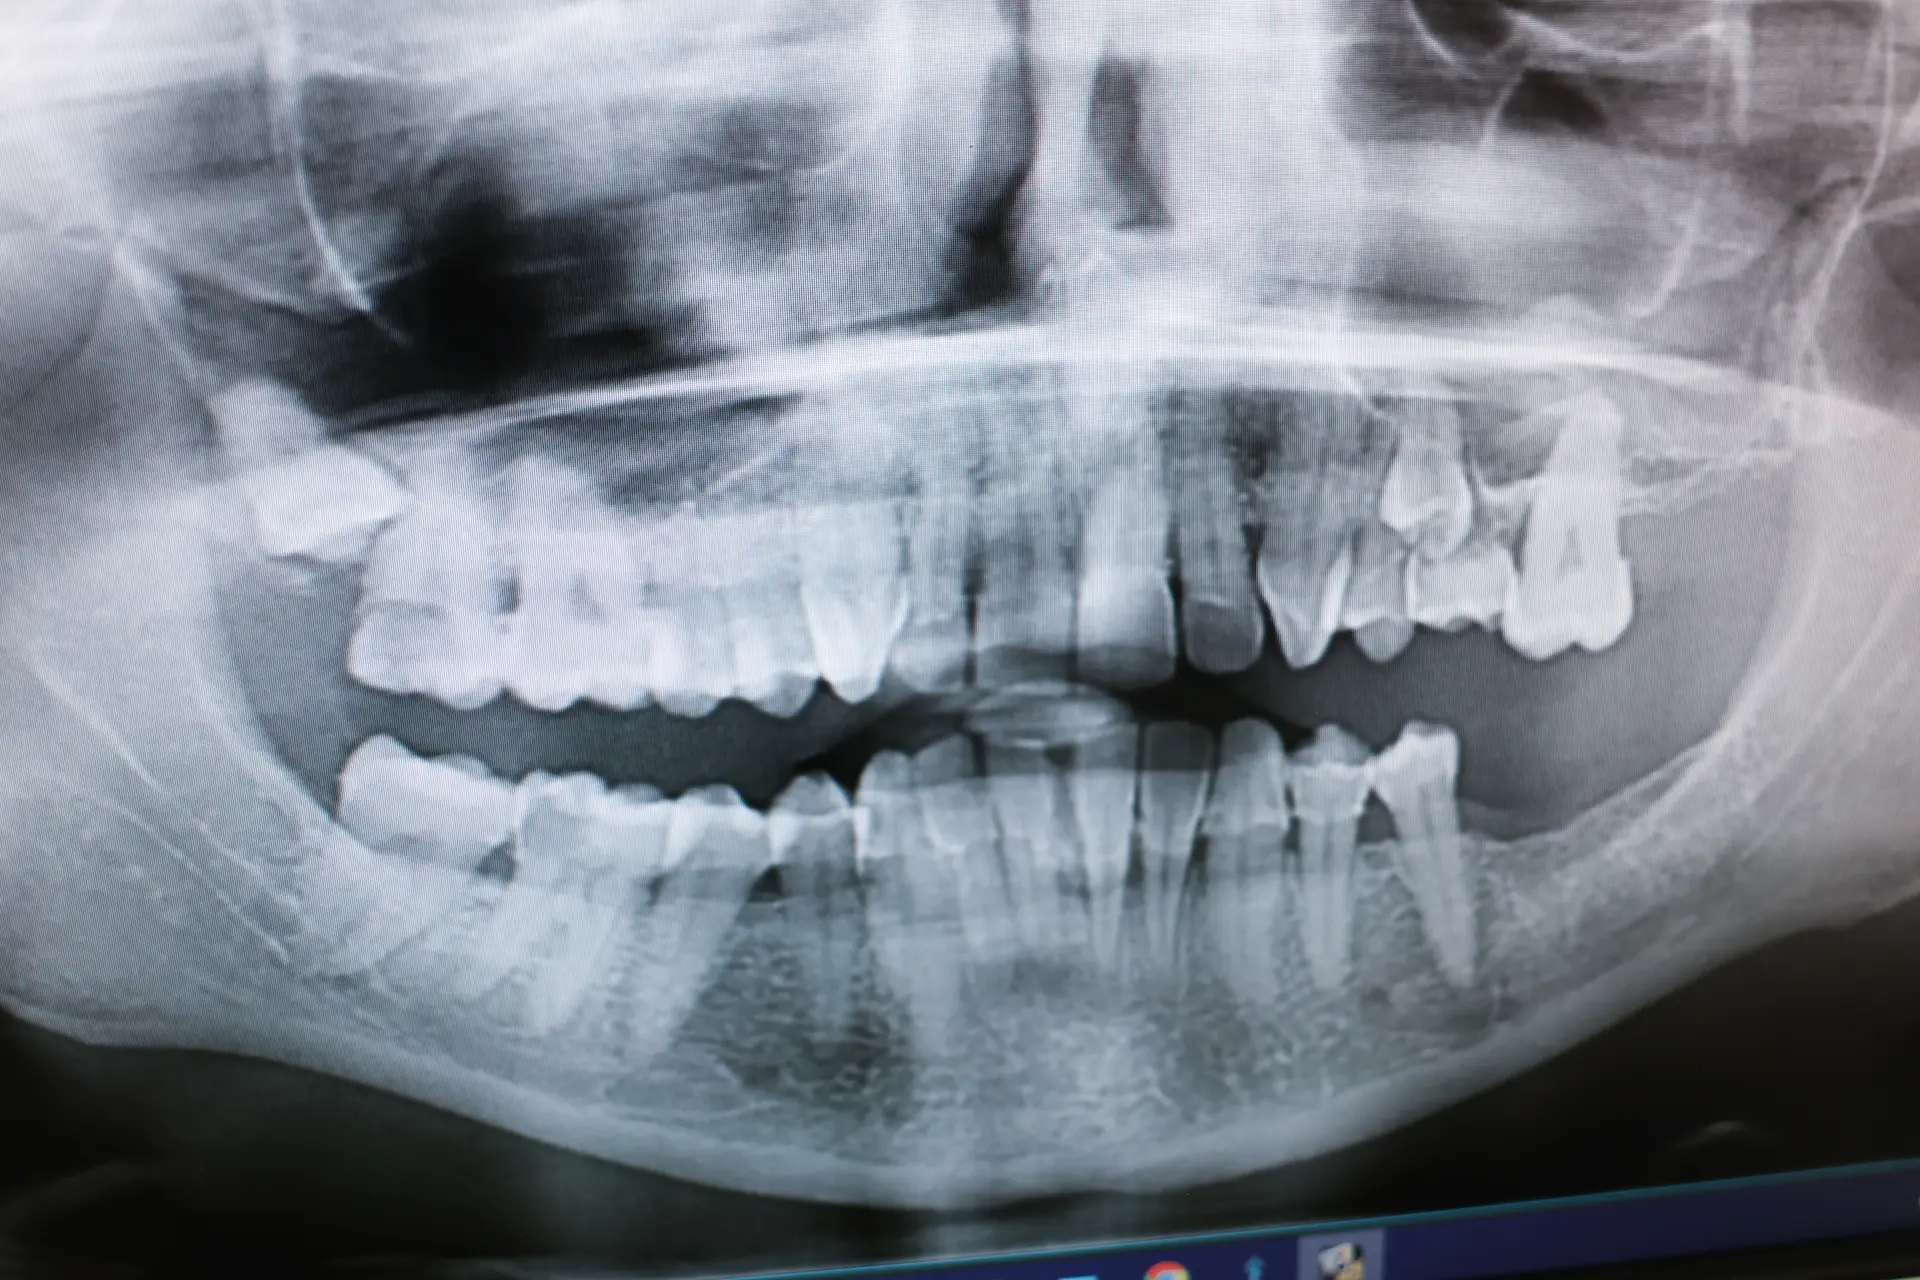 dental implant is loose